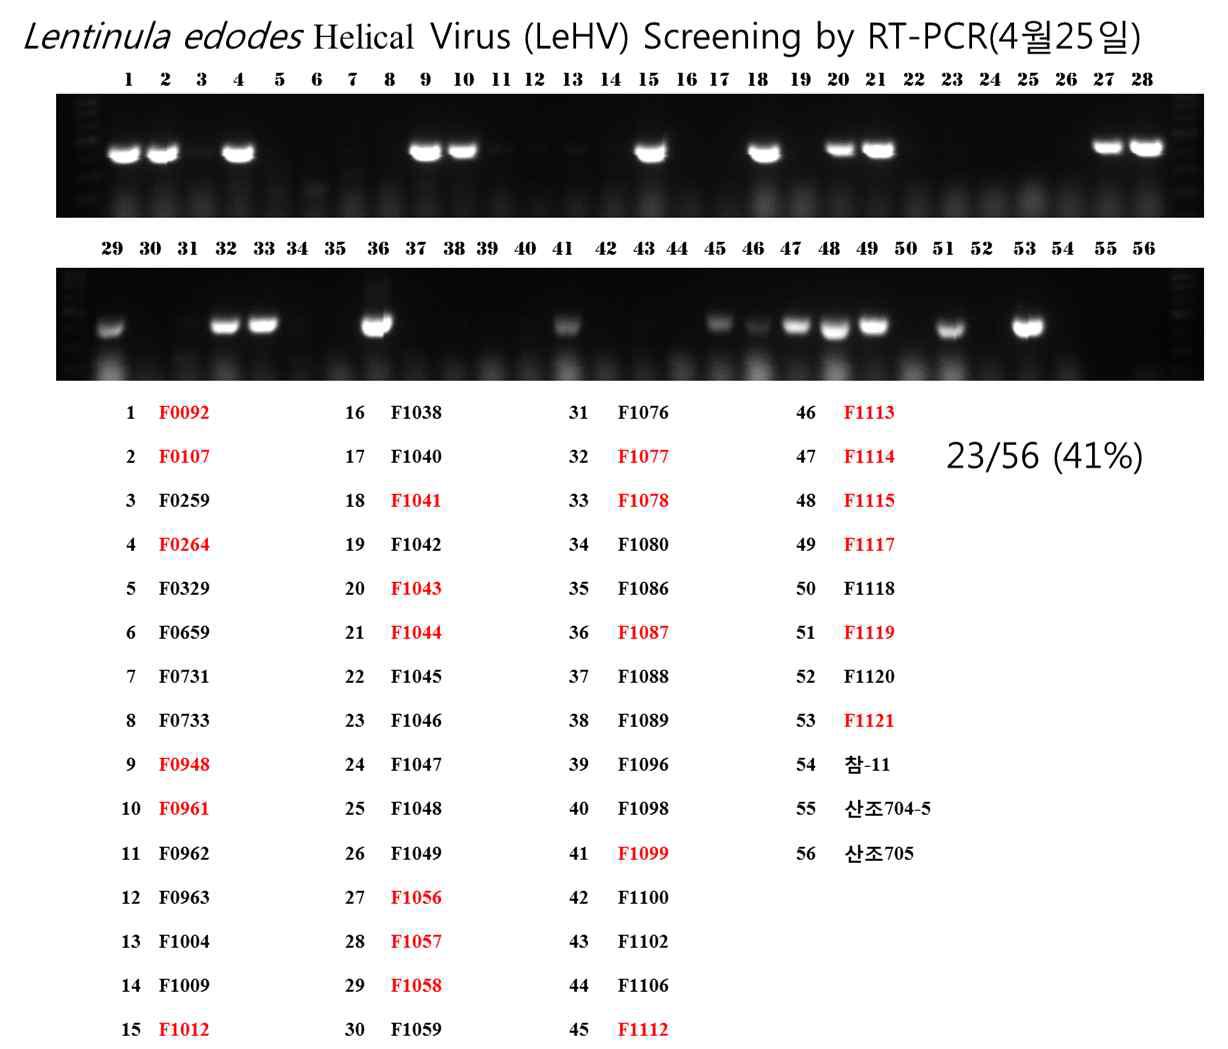 산림버섯 연구소 교배균주 육성용 일핵균주에서의 LeHV LeSV를 검출하기 위한 RT-PCR